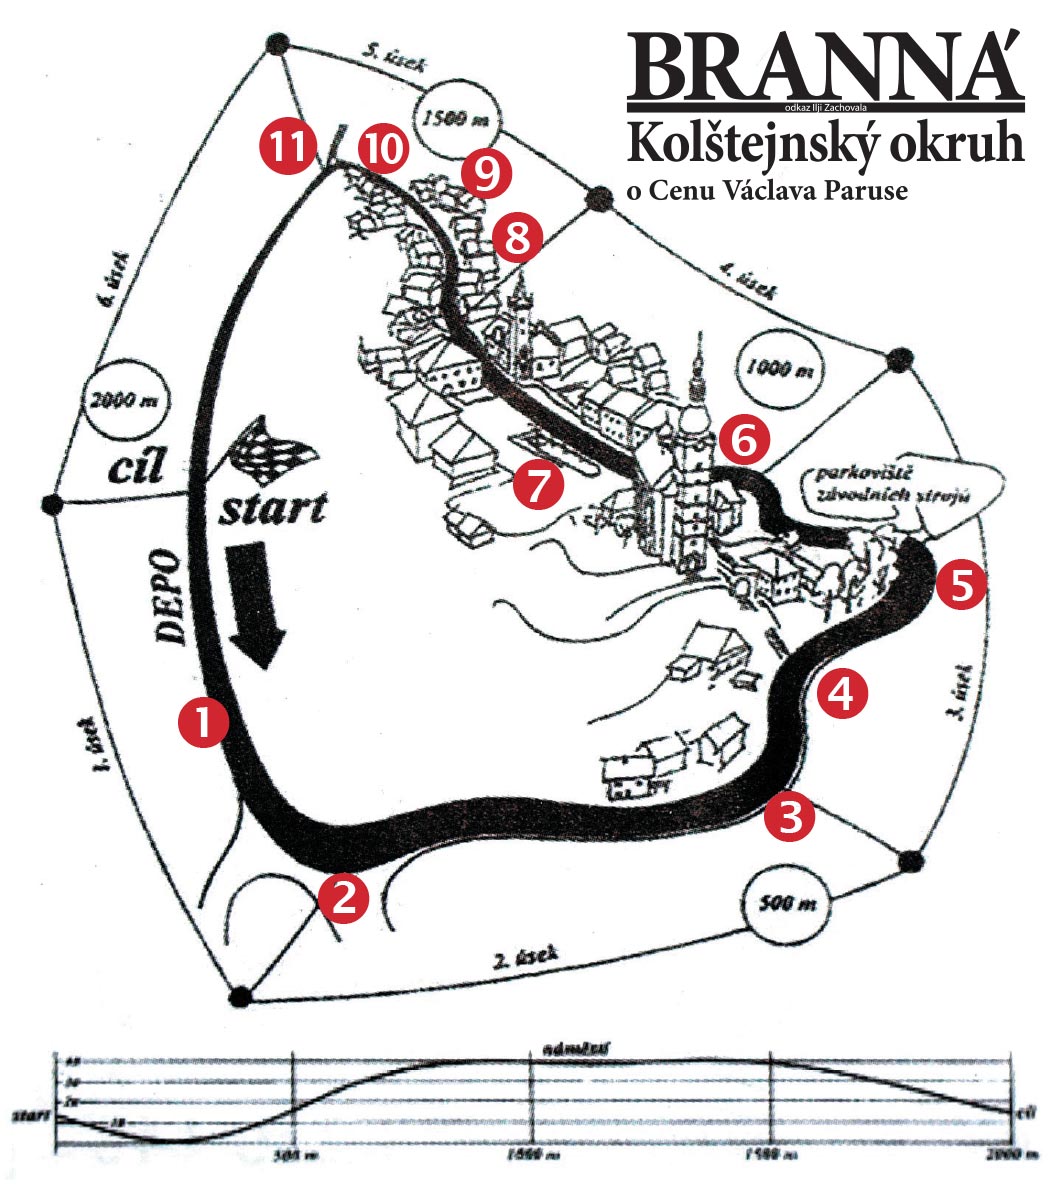 Stylizovaná mapa Kolštejnského okruhu od Ilji Zachovala